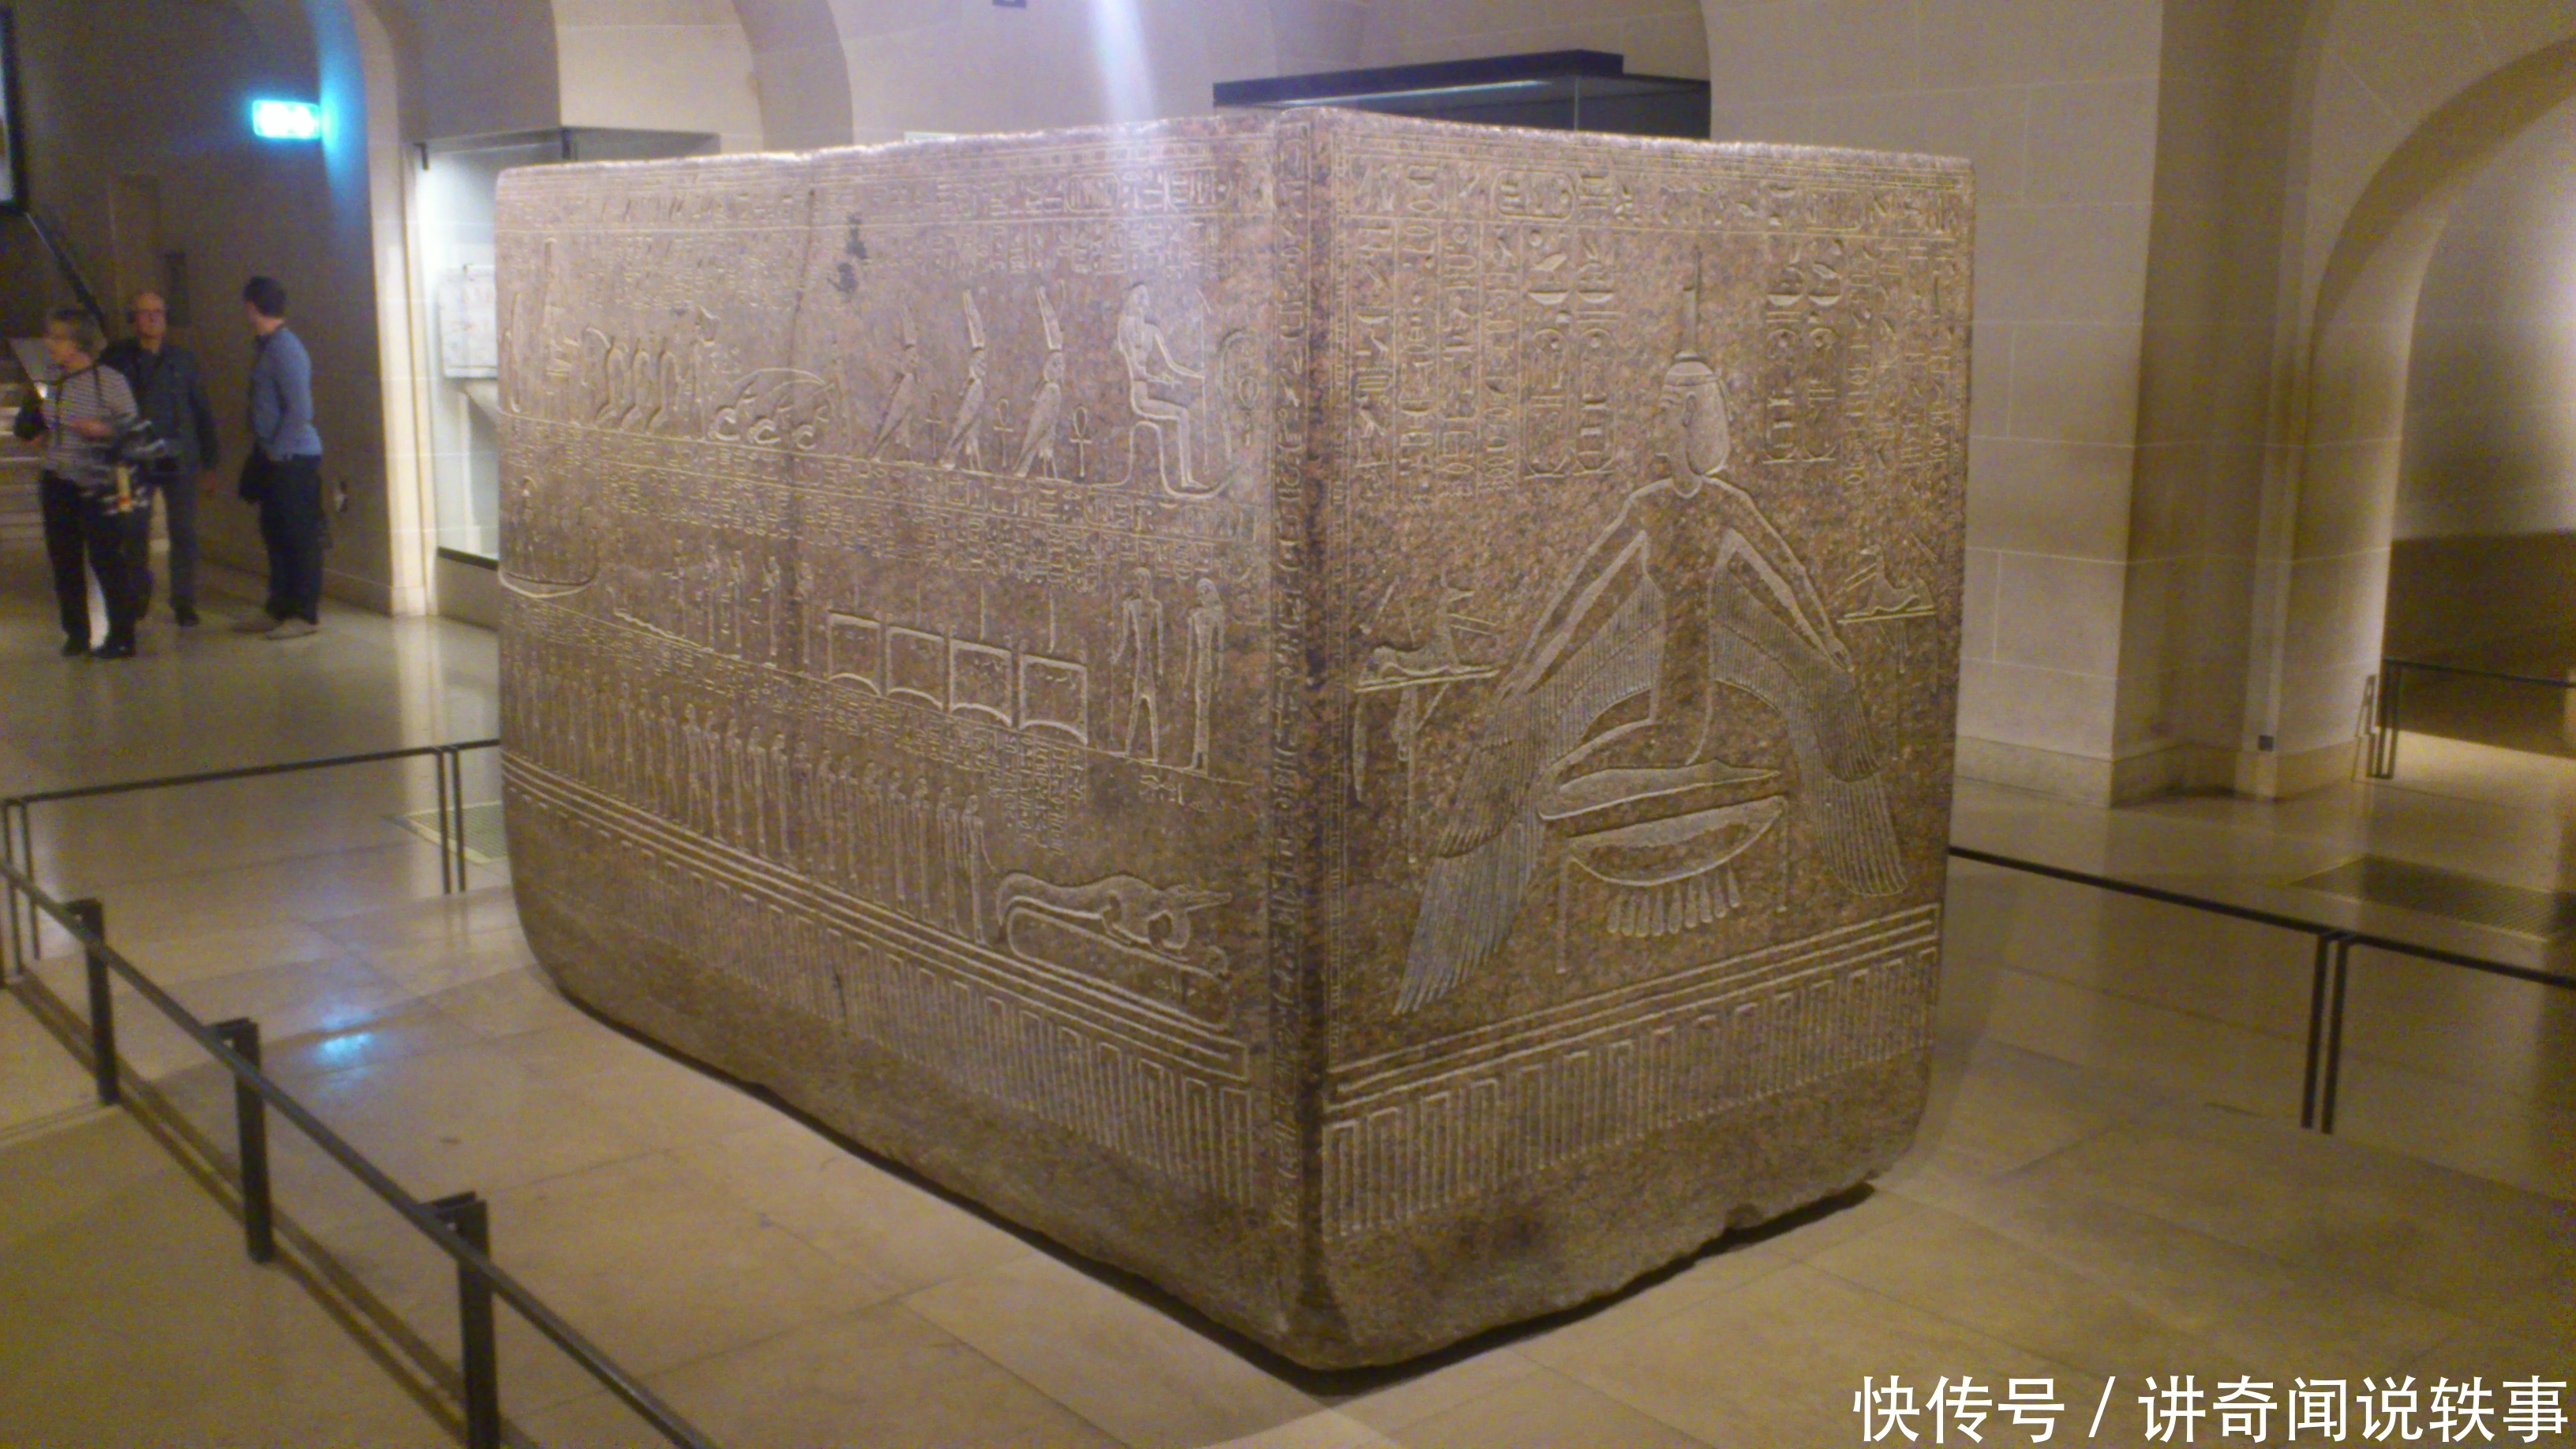 埃及发现神秘石棺,其技术超过当时科技水平,英